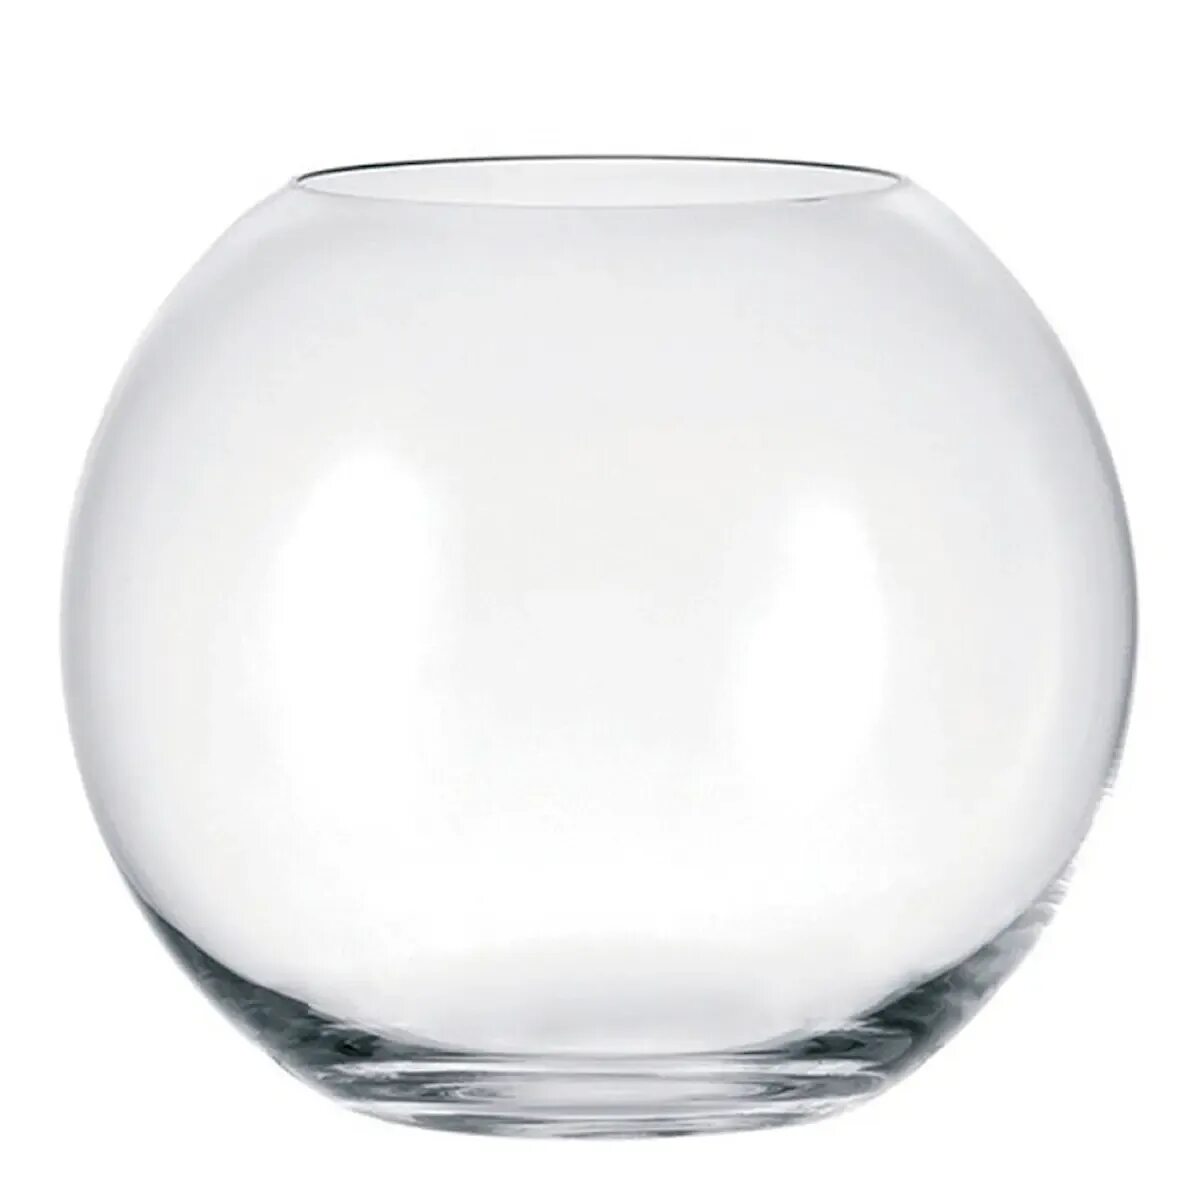 Шар 10 литров. Аквариум шар плоскодонный, 10л. Аквариум круглый плоскодонный 15 л. Круглые вазы. Ваза круглая стеклянная.